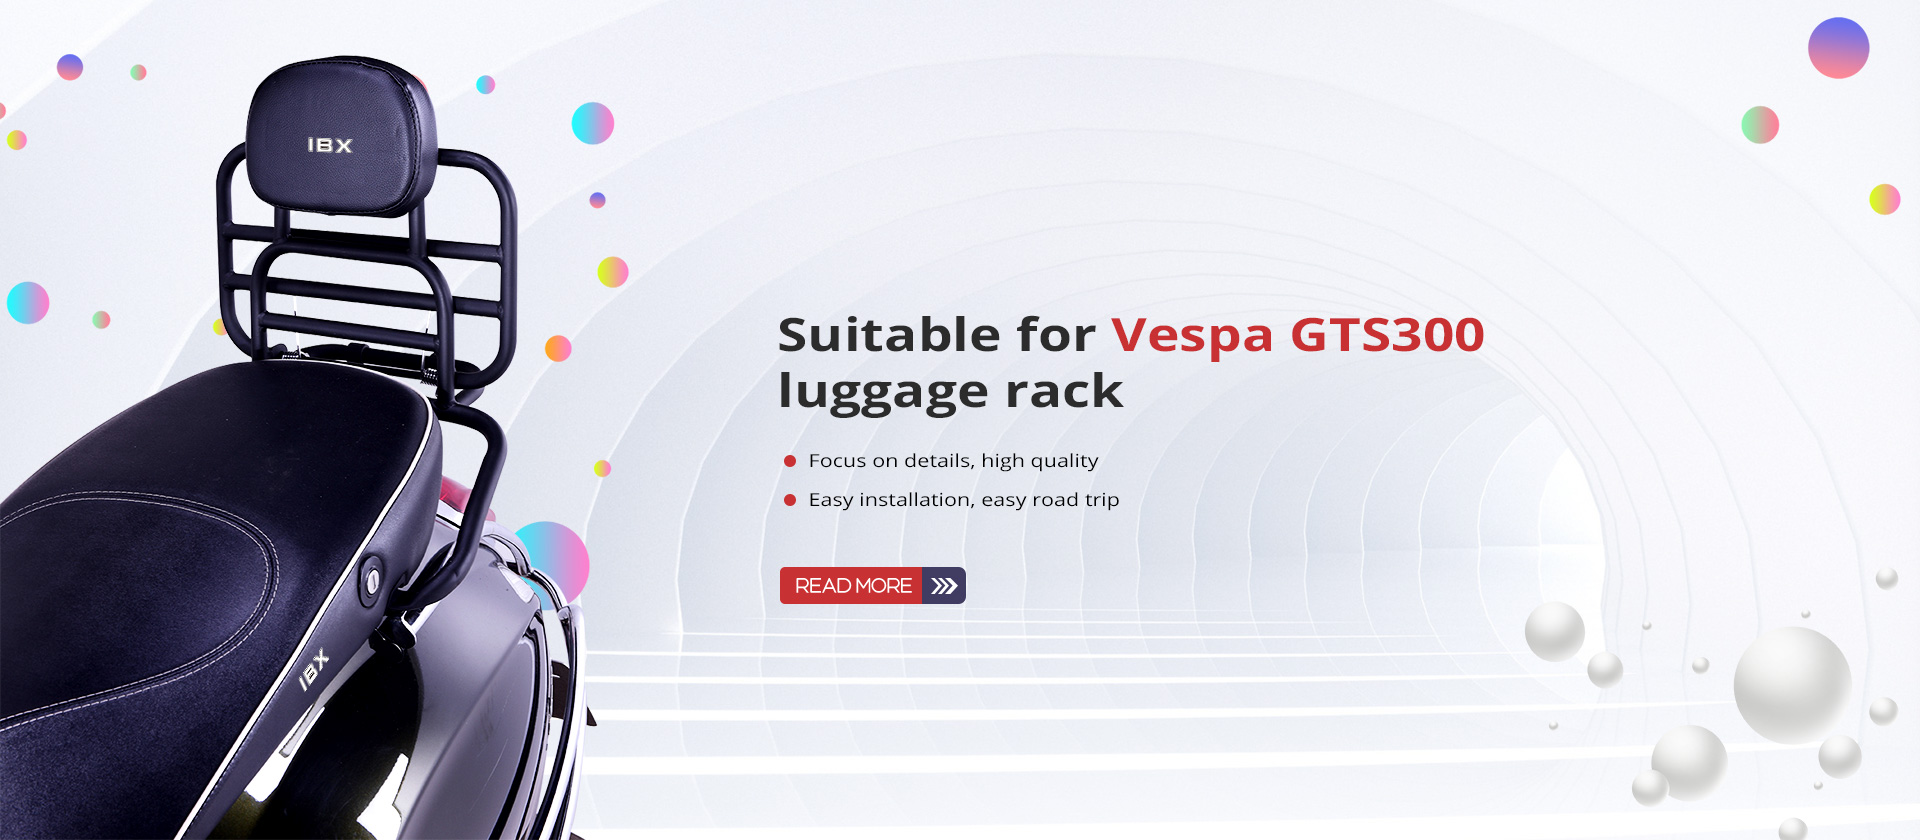 Vespa GTS300 सामान र्याकको लागि उपयुक्त